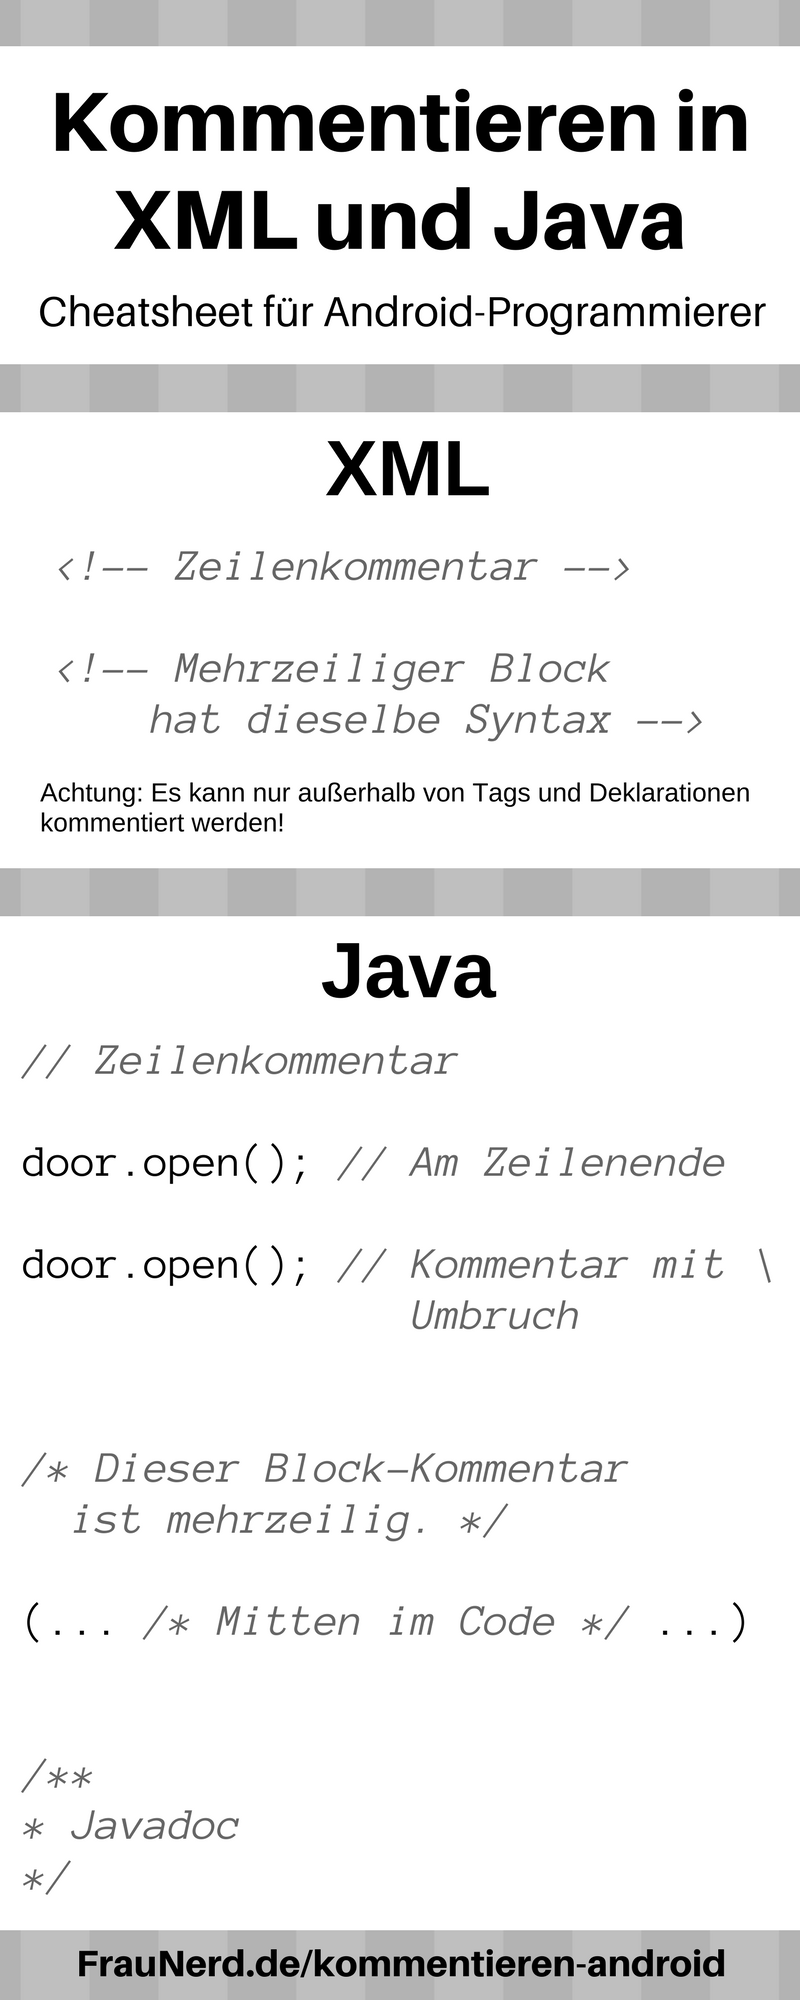 Cheatsheet für Android-Programmierer: Kommentieren in XML und Java